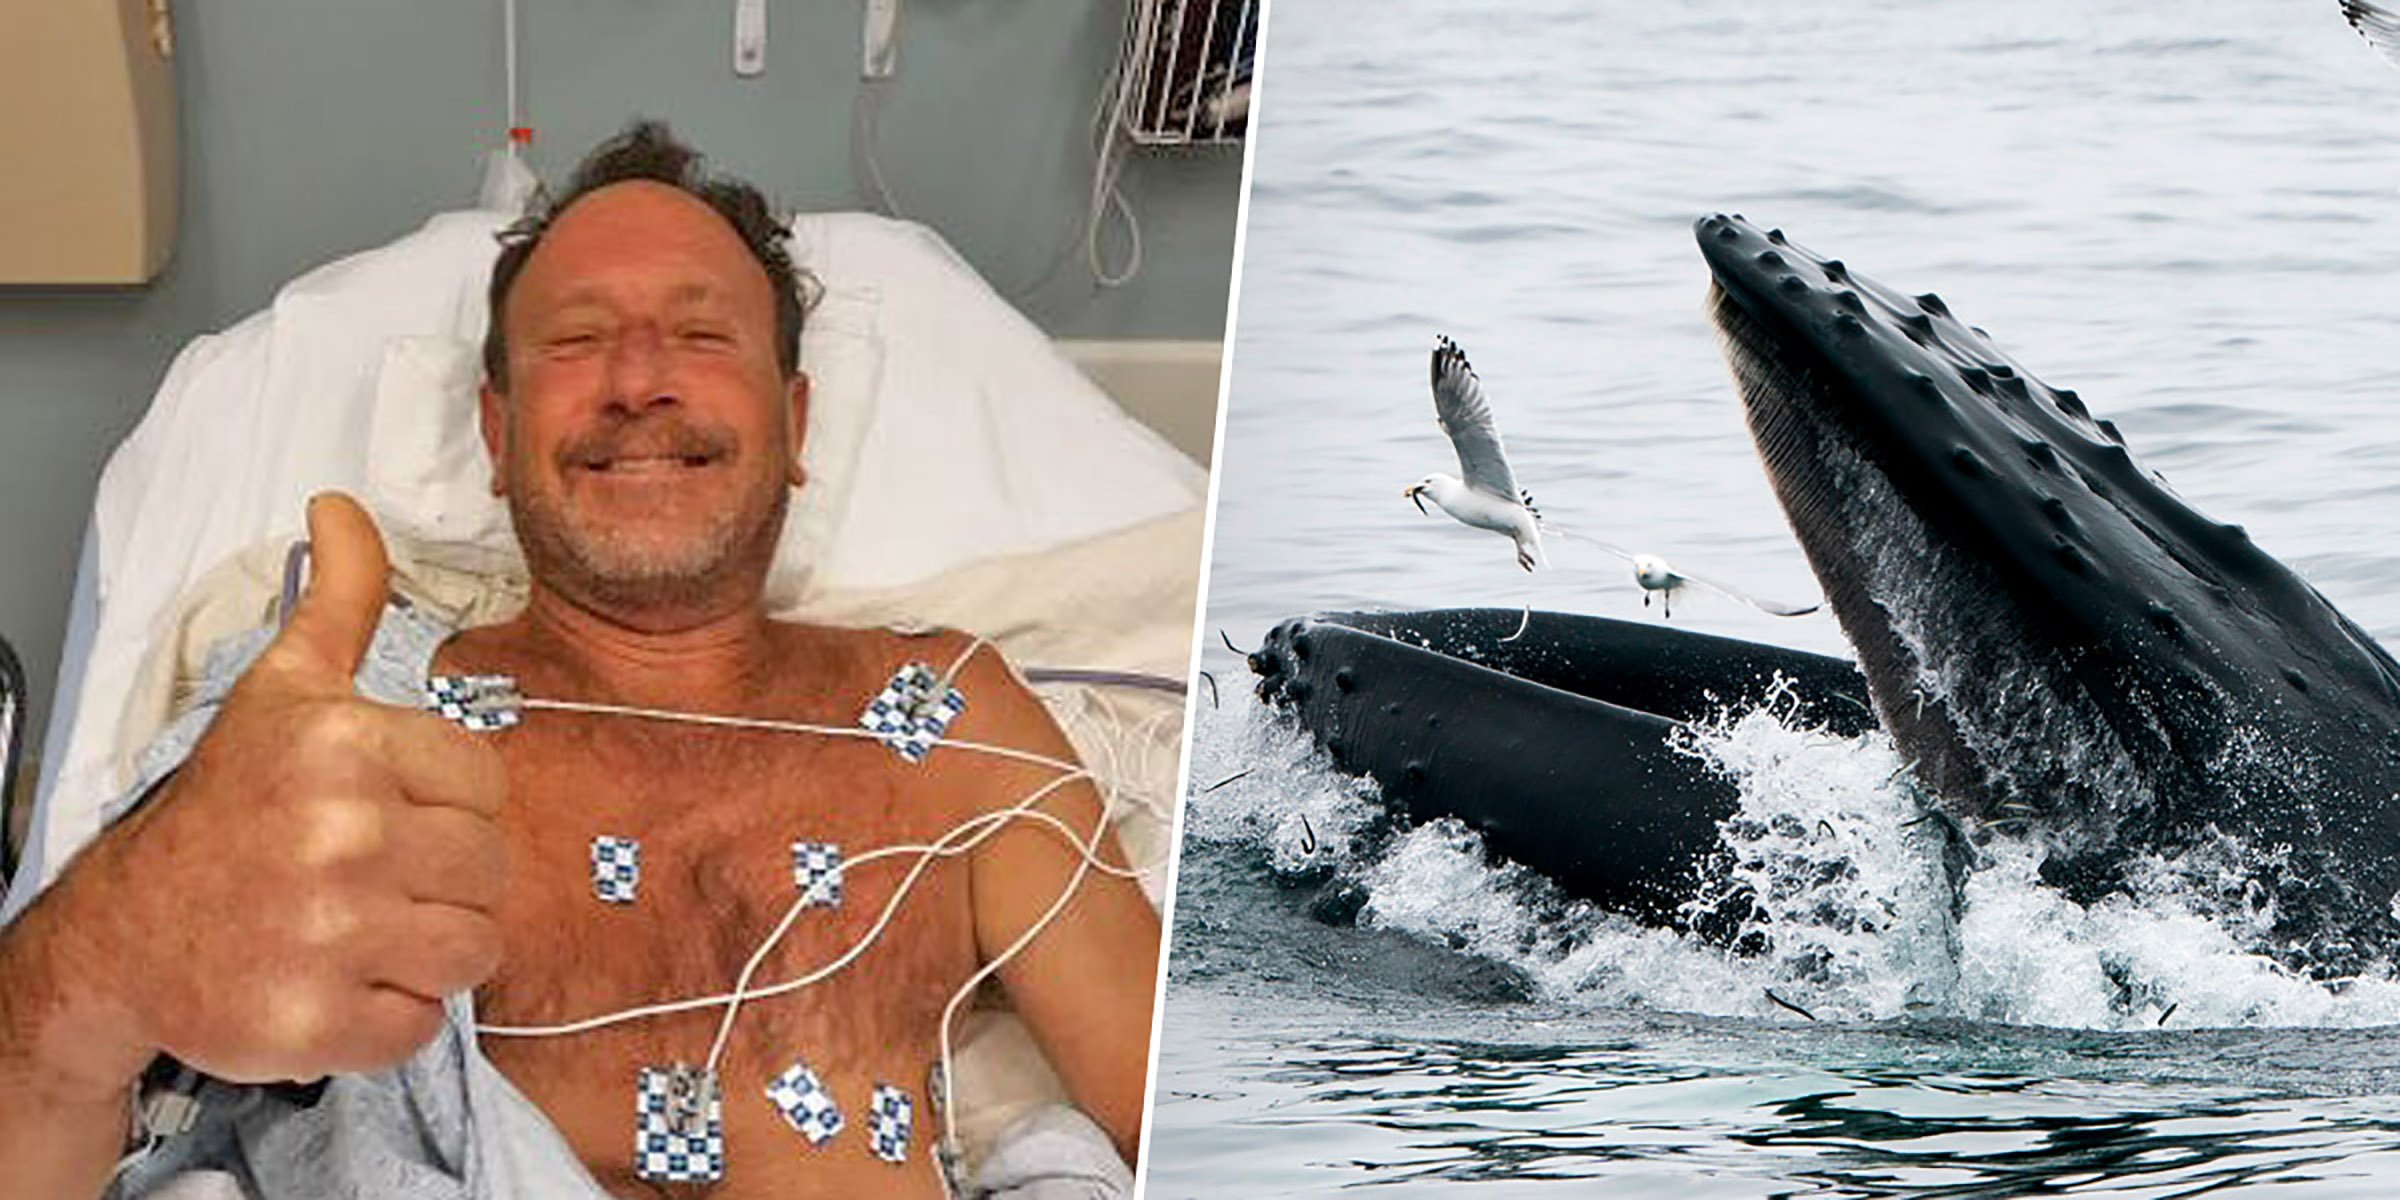  A fost înghiţit de o balenă, dar a supravieţuit. Ce i s-a întâmplat la spital